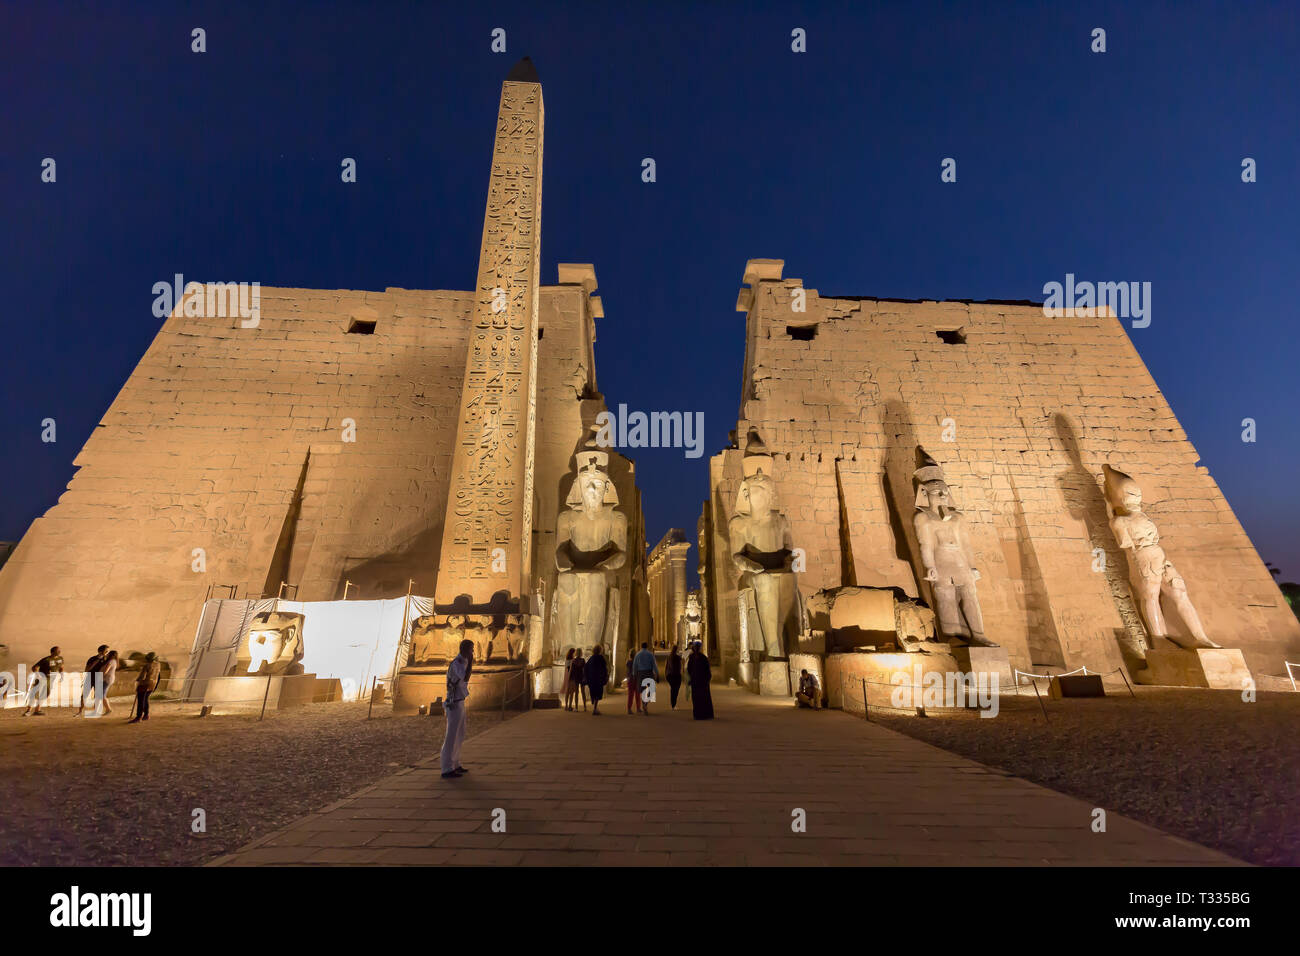 Una vista nocturna del Templo de Luxor en Egipto Foto de stock